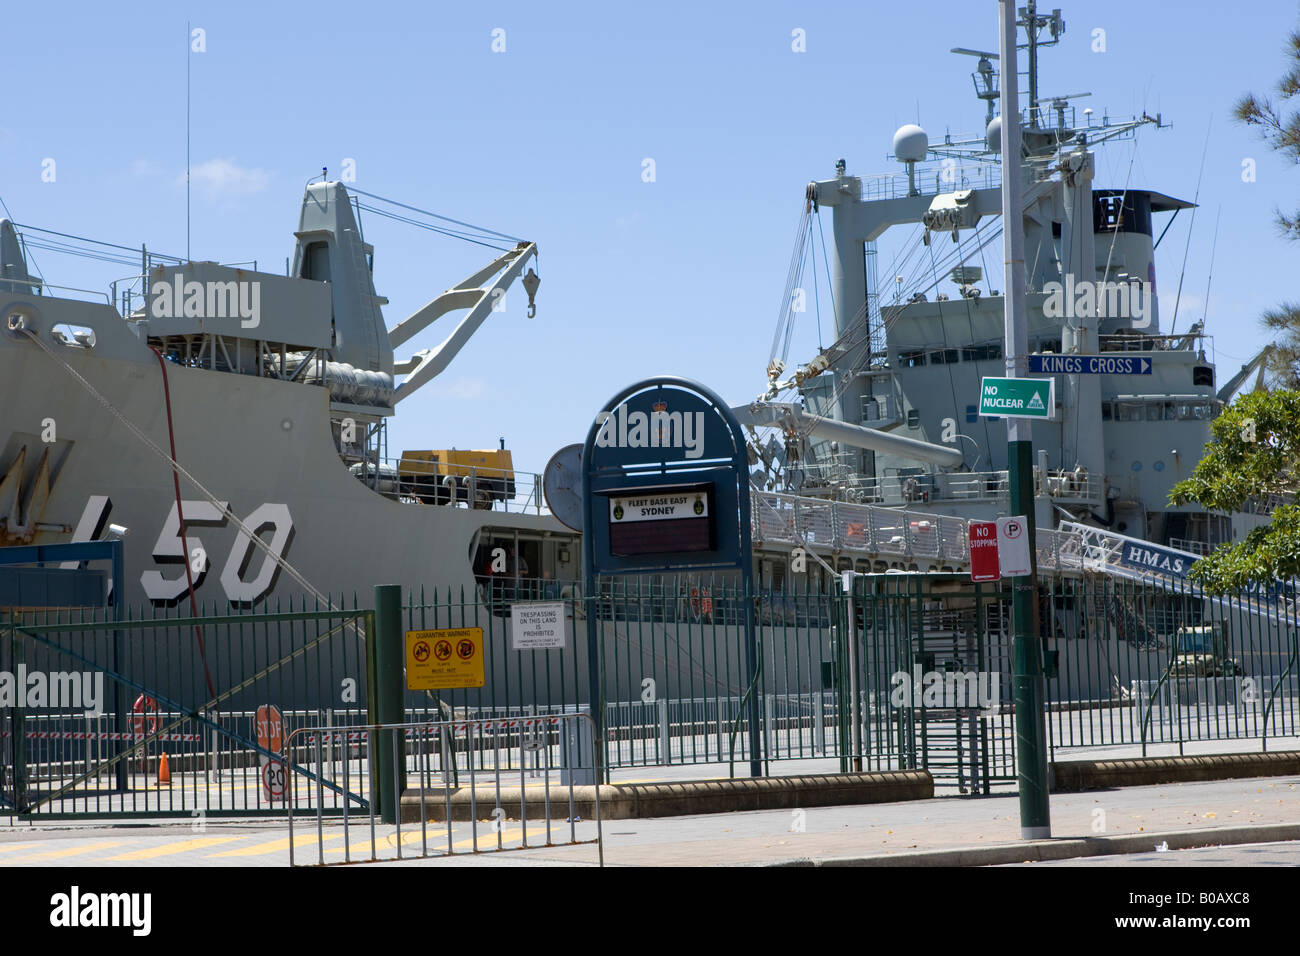 Bateau de la marine américaine Woolloomooloo Sydney NSW Australie Nouvelle Galles du Sud avec un pas d'inscription et aucun parking sign Banque D'Images